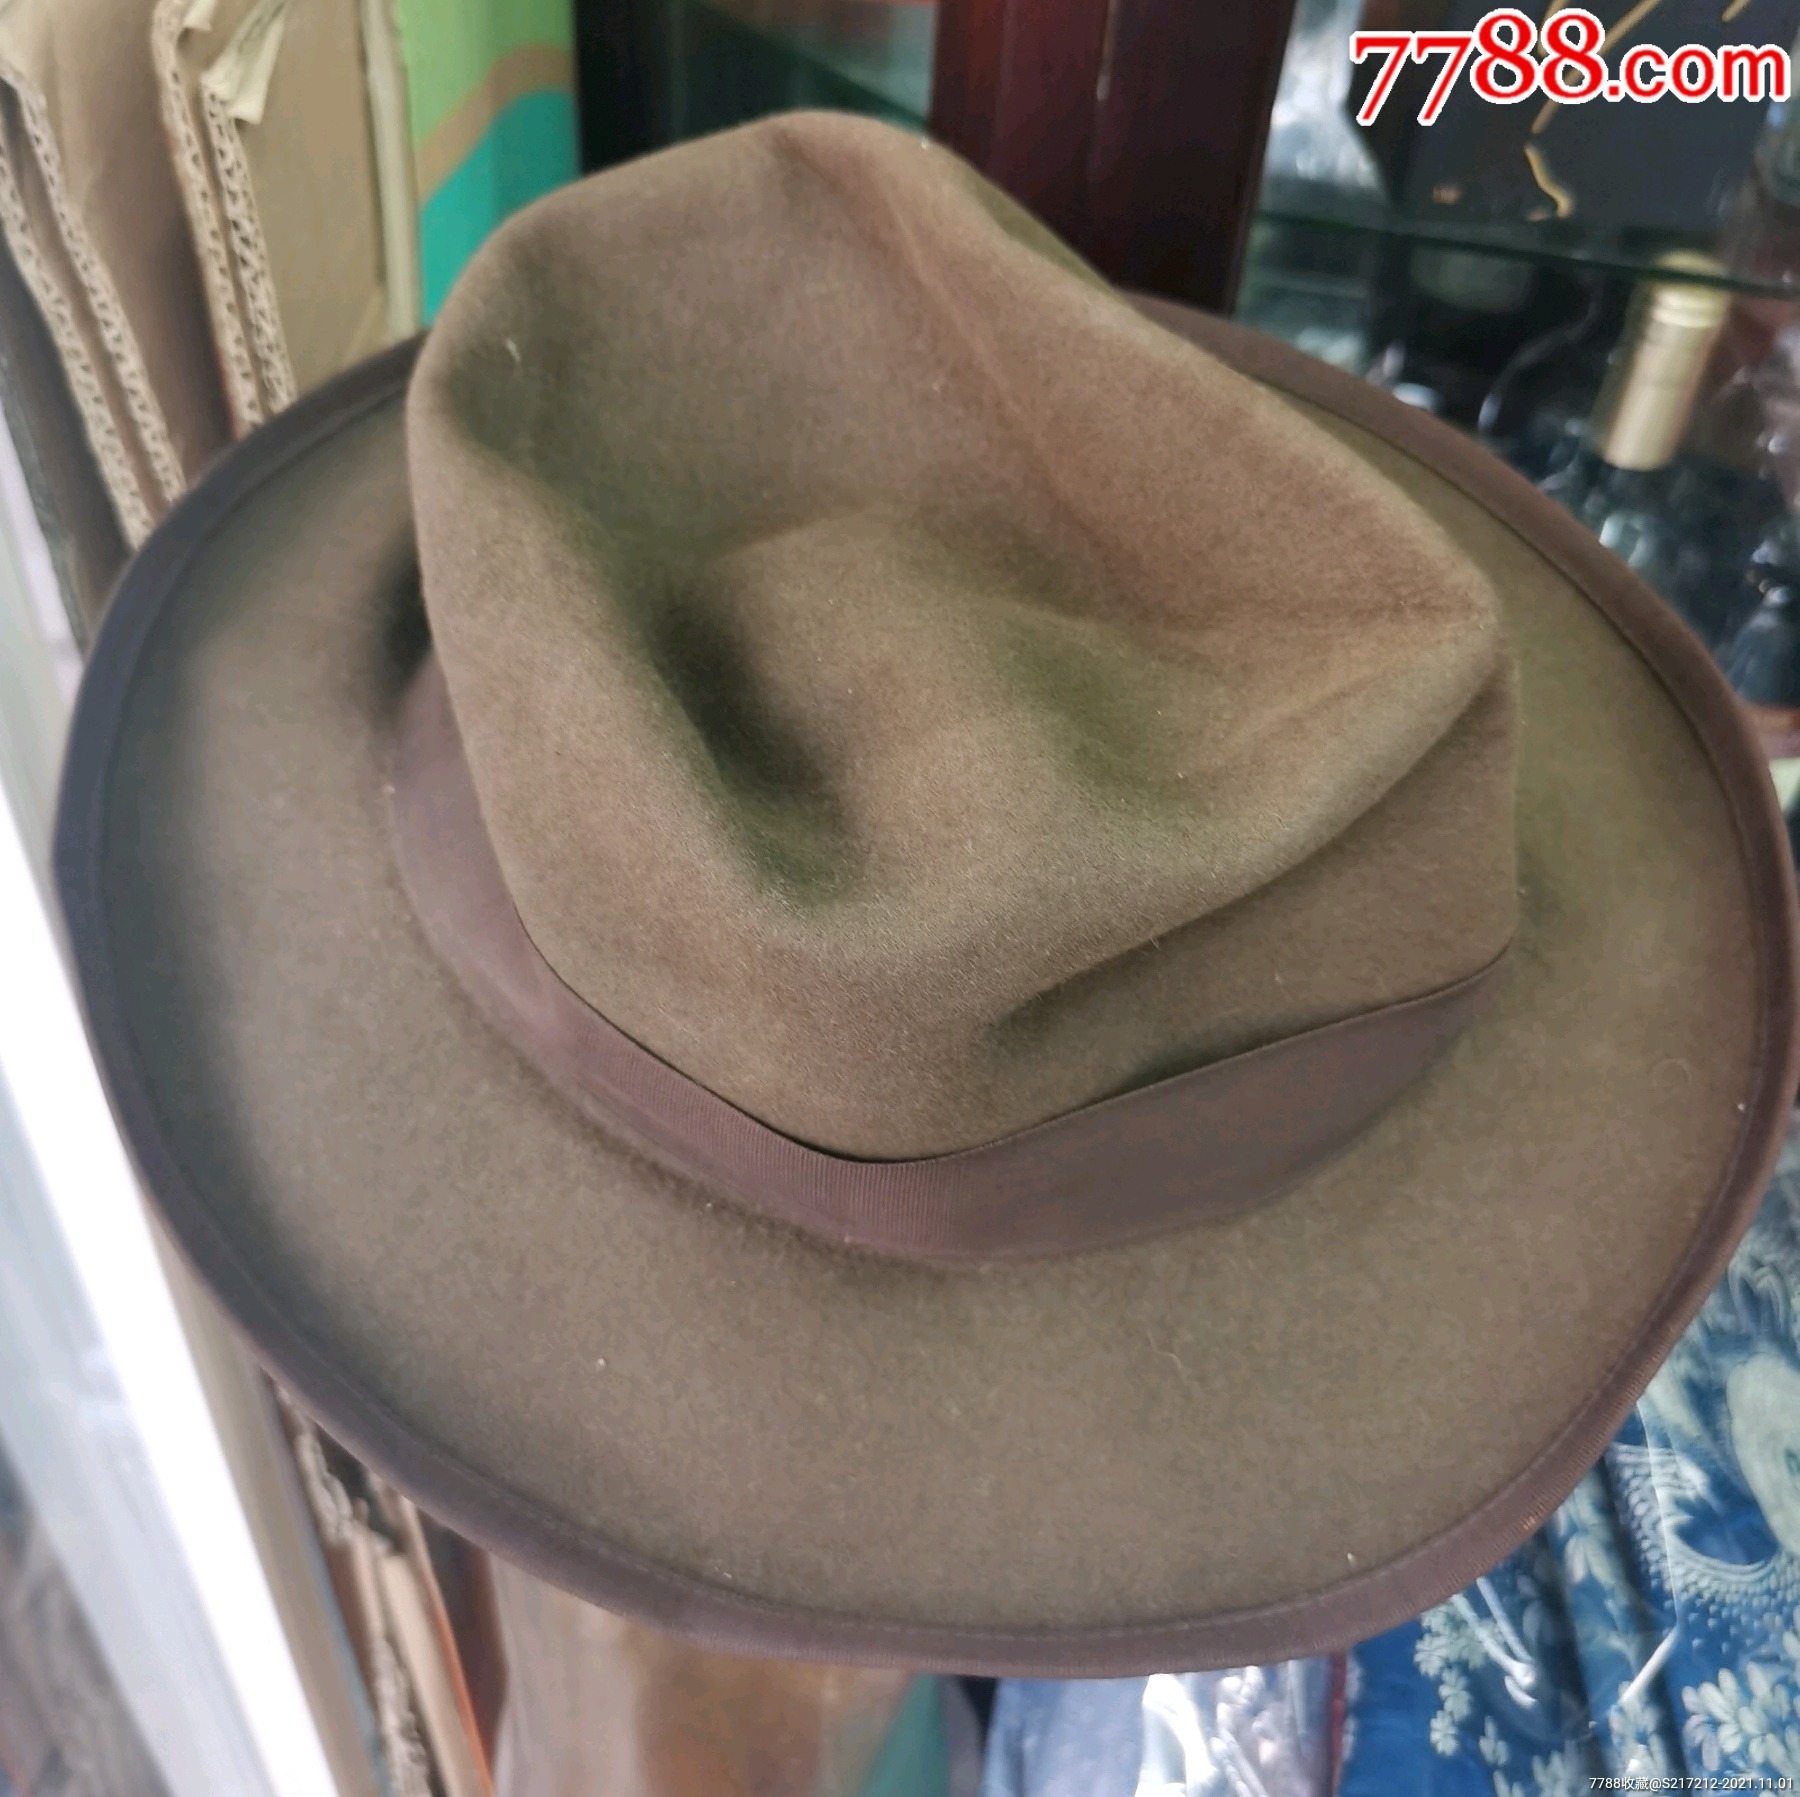 民国时期礼帽-价格:500元-se83491142-帽子-零售-7788